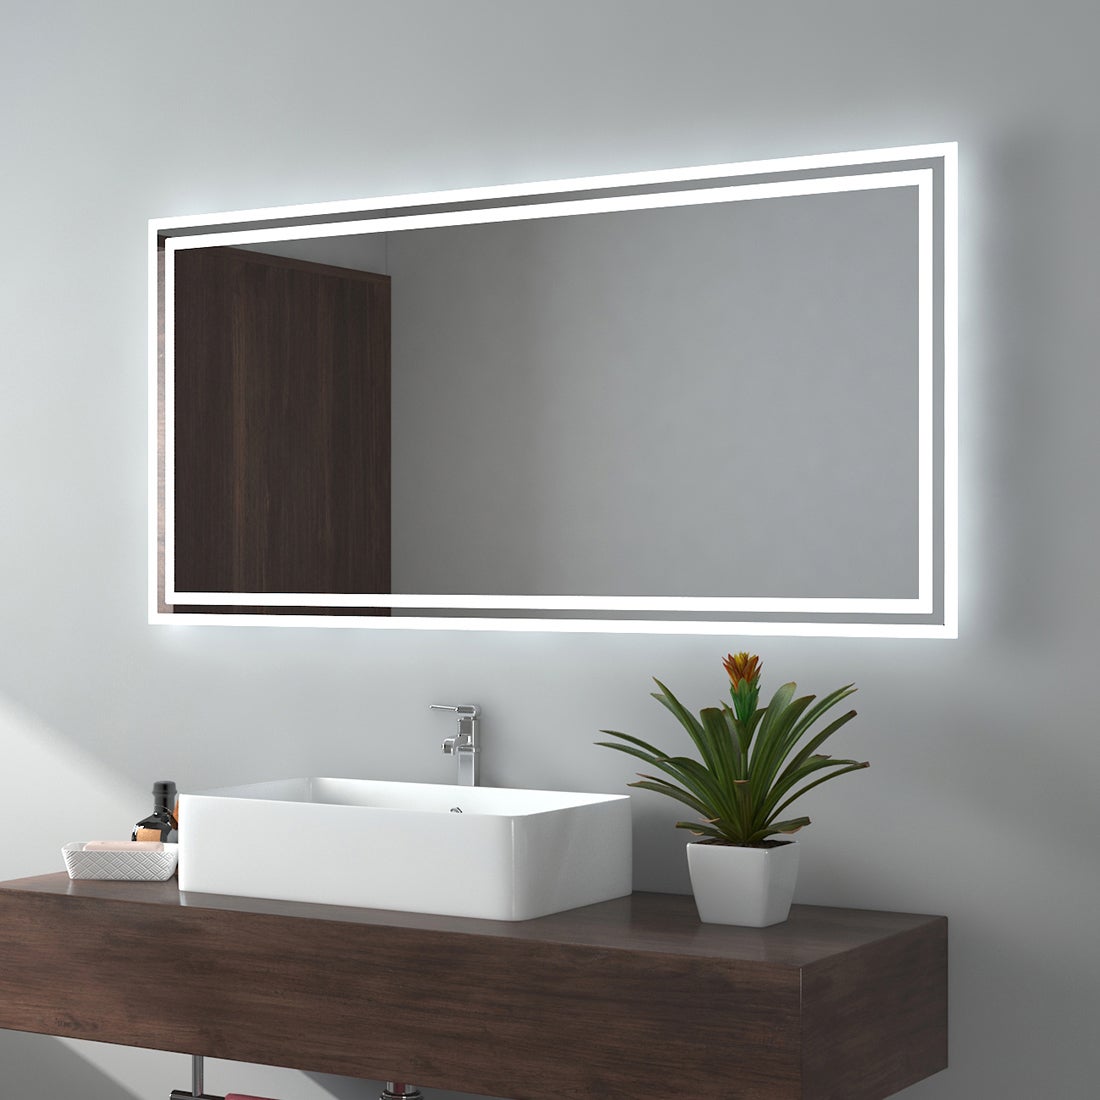 EMKE Badspiegel LED IP44 Wasserdicht Wandspiegel, 120x60cm, Kaltweißes/Warmweißes Licht, Knopfschalter, Beschlagfrei